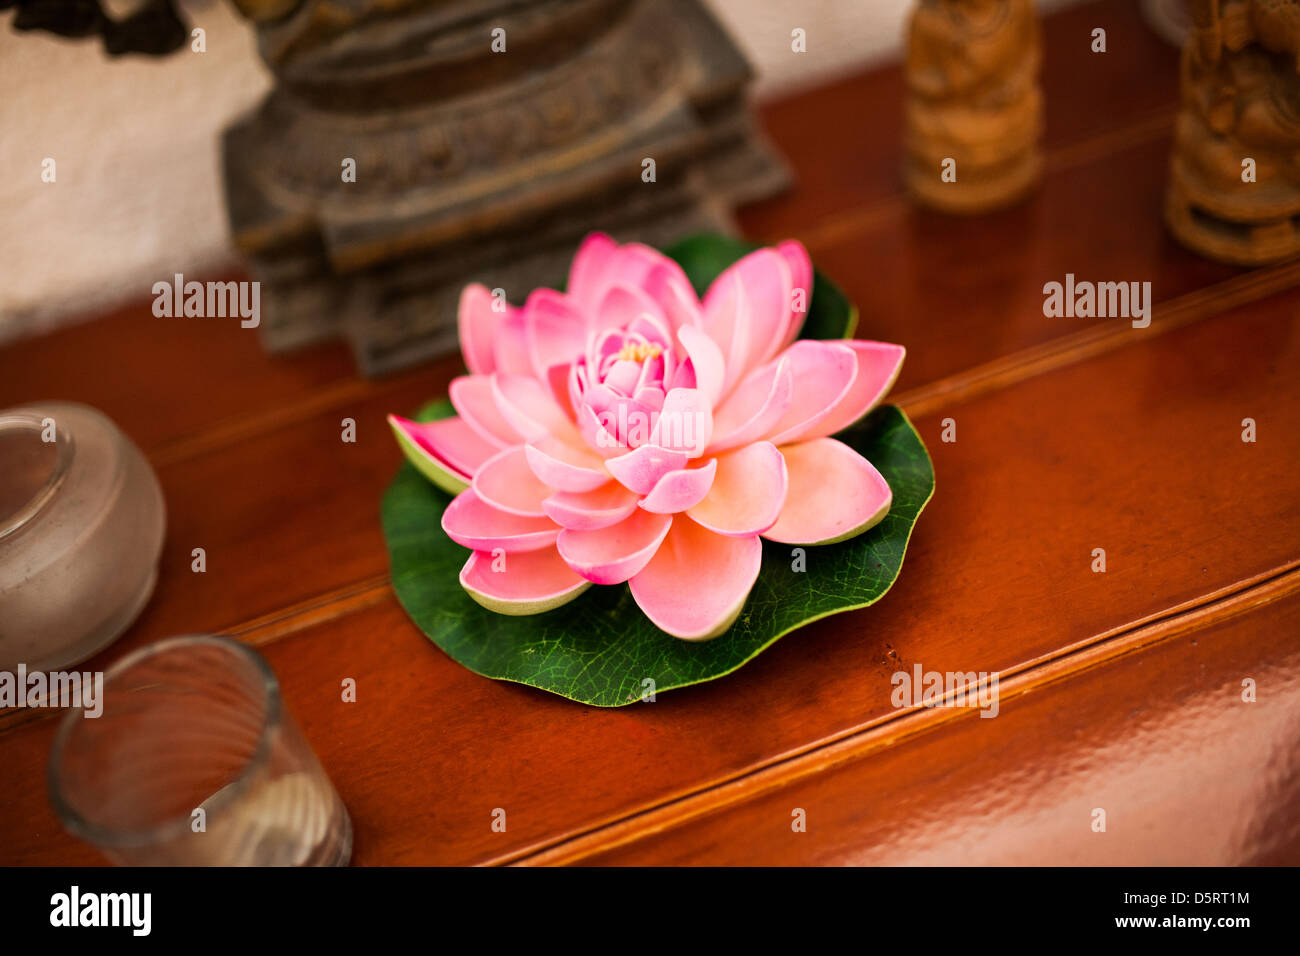 Una flor de loto que vela, que se asocia con la pureza y belleza. Foto de stock